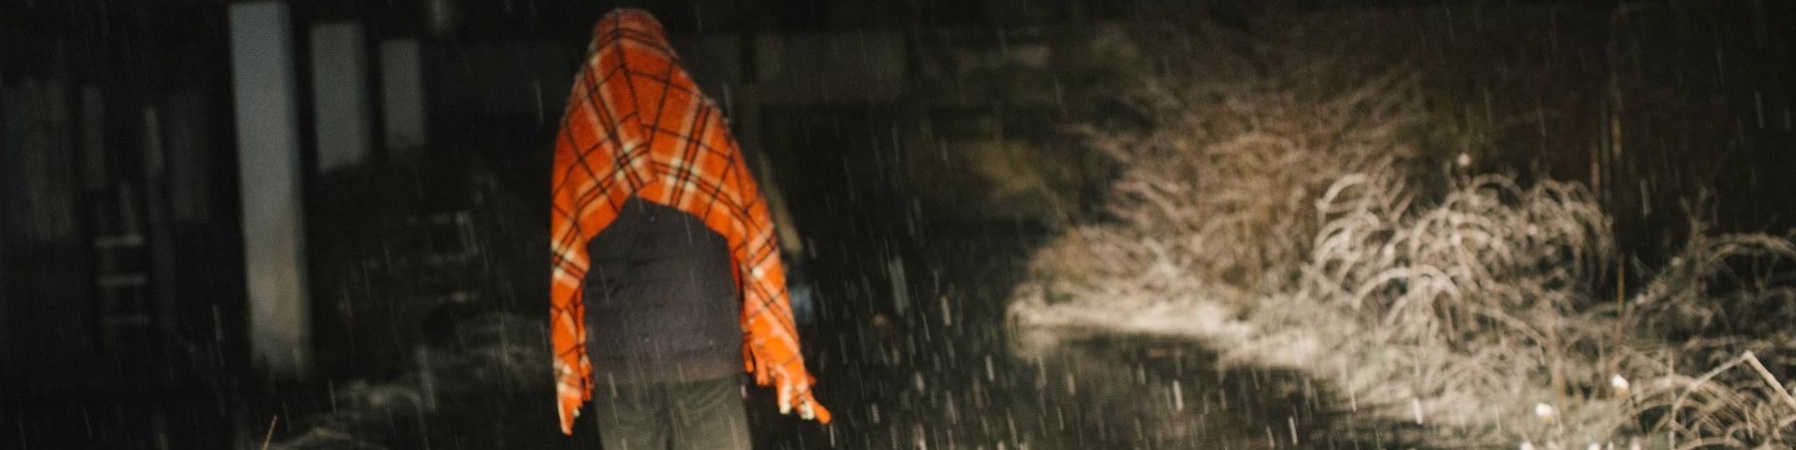 Foto notturna in un viale oscuro mentre sta nevicando. Si vede di spalle un ragazzo che cammina lungo il viale e sotto la neve con pantaloni scuri e una coperta arancione posta sopra le spalle e la testa.